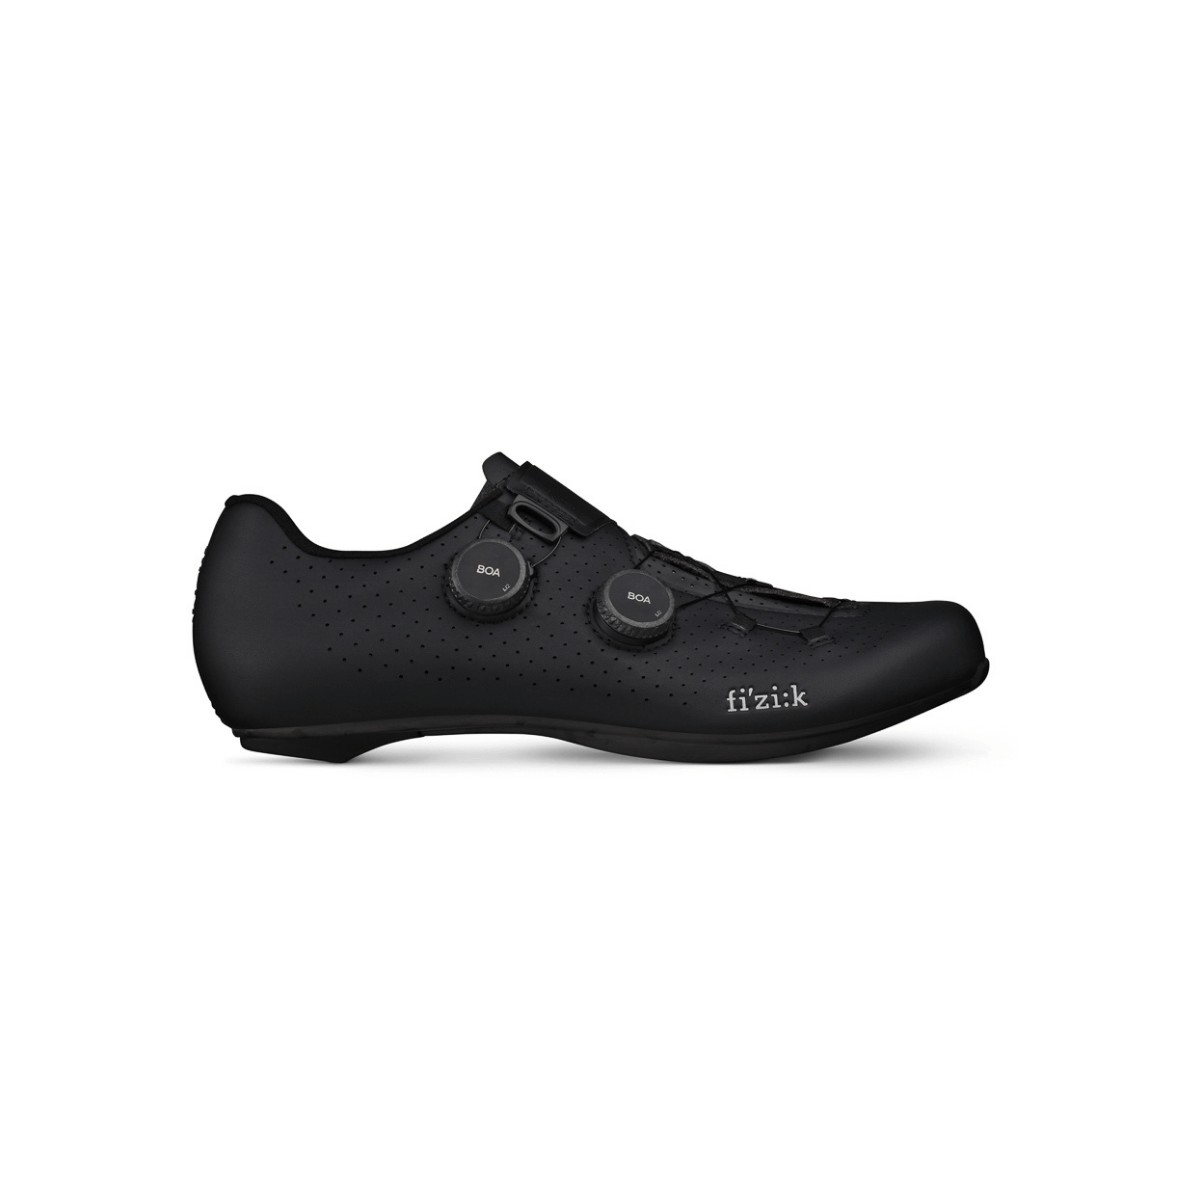 Chaussures Fizik Vento Infinito Carbon 2 Noir